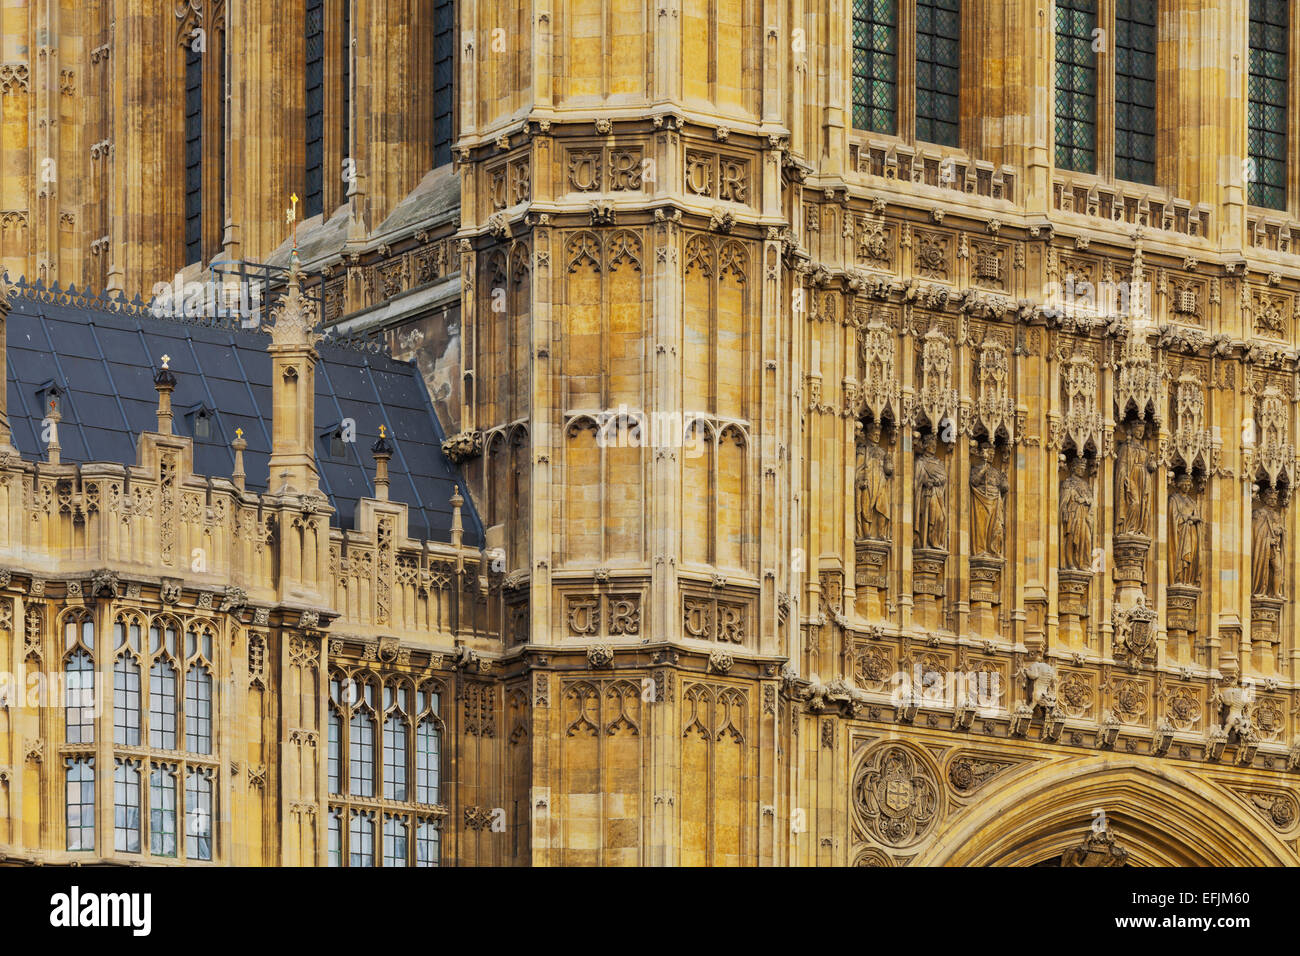 Adornamiento de la fassade del Palacio de Westminster, Londres, Inglaterra Foto de stock